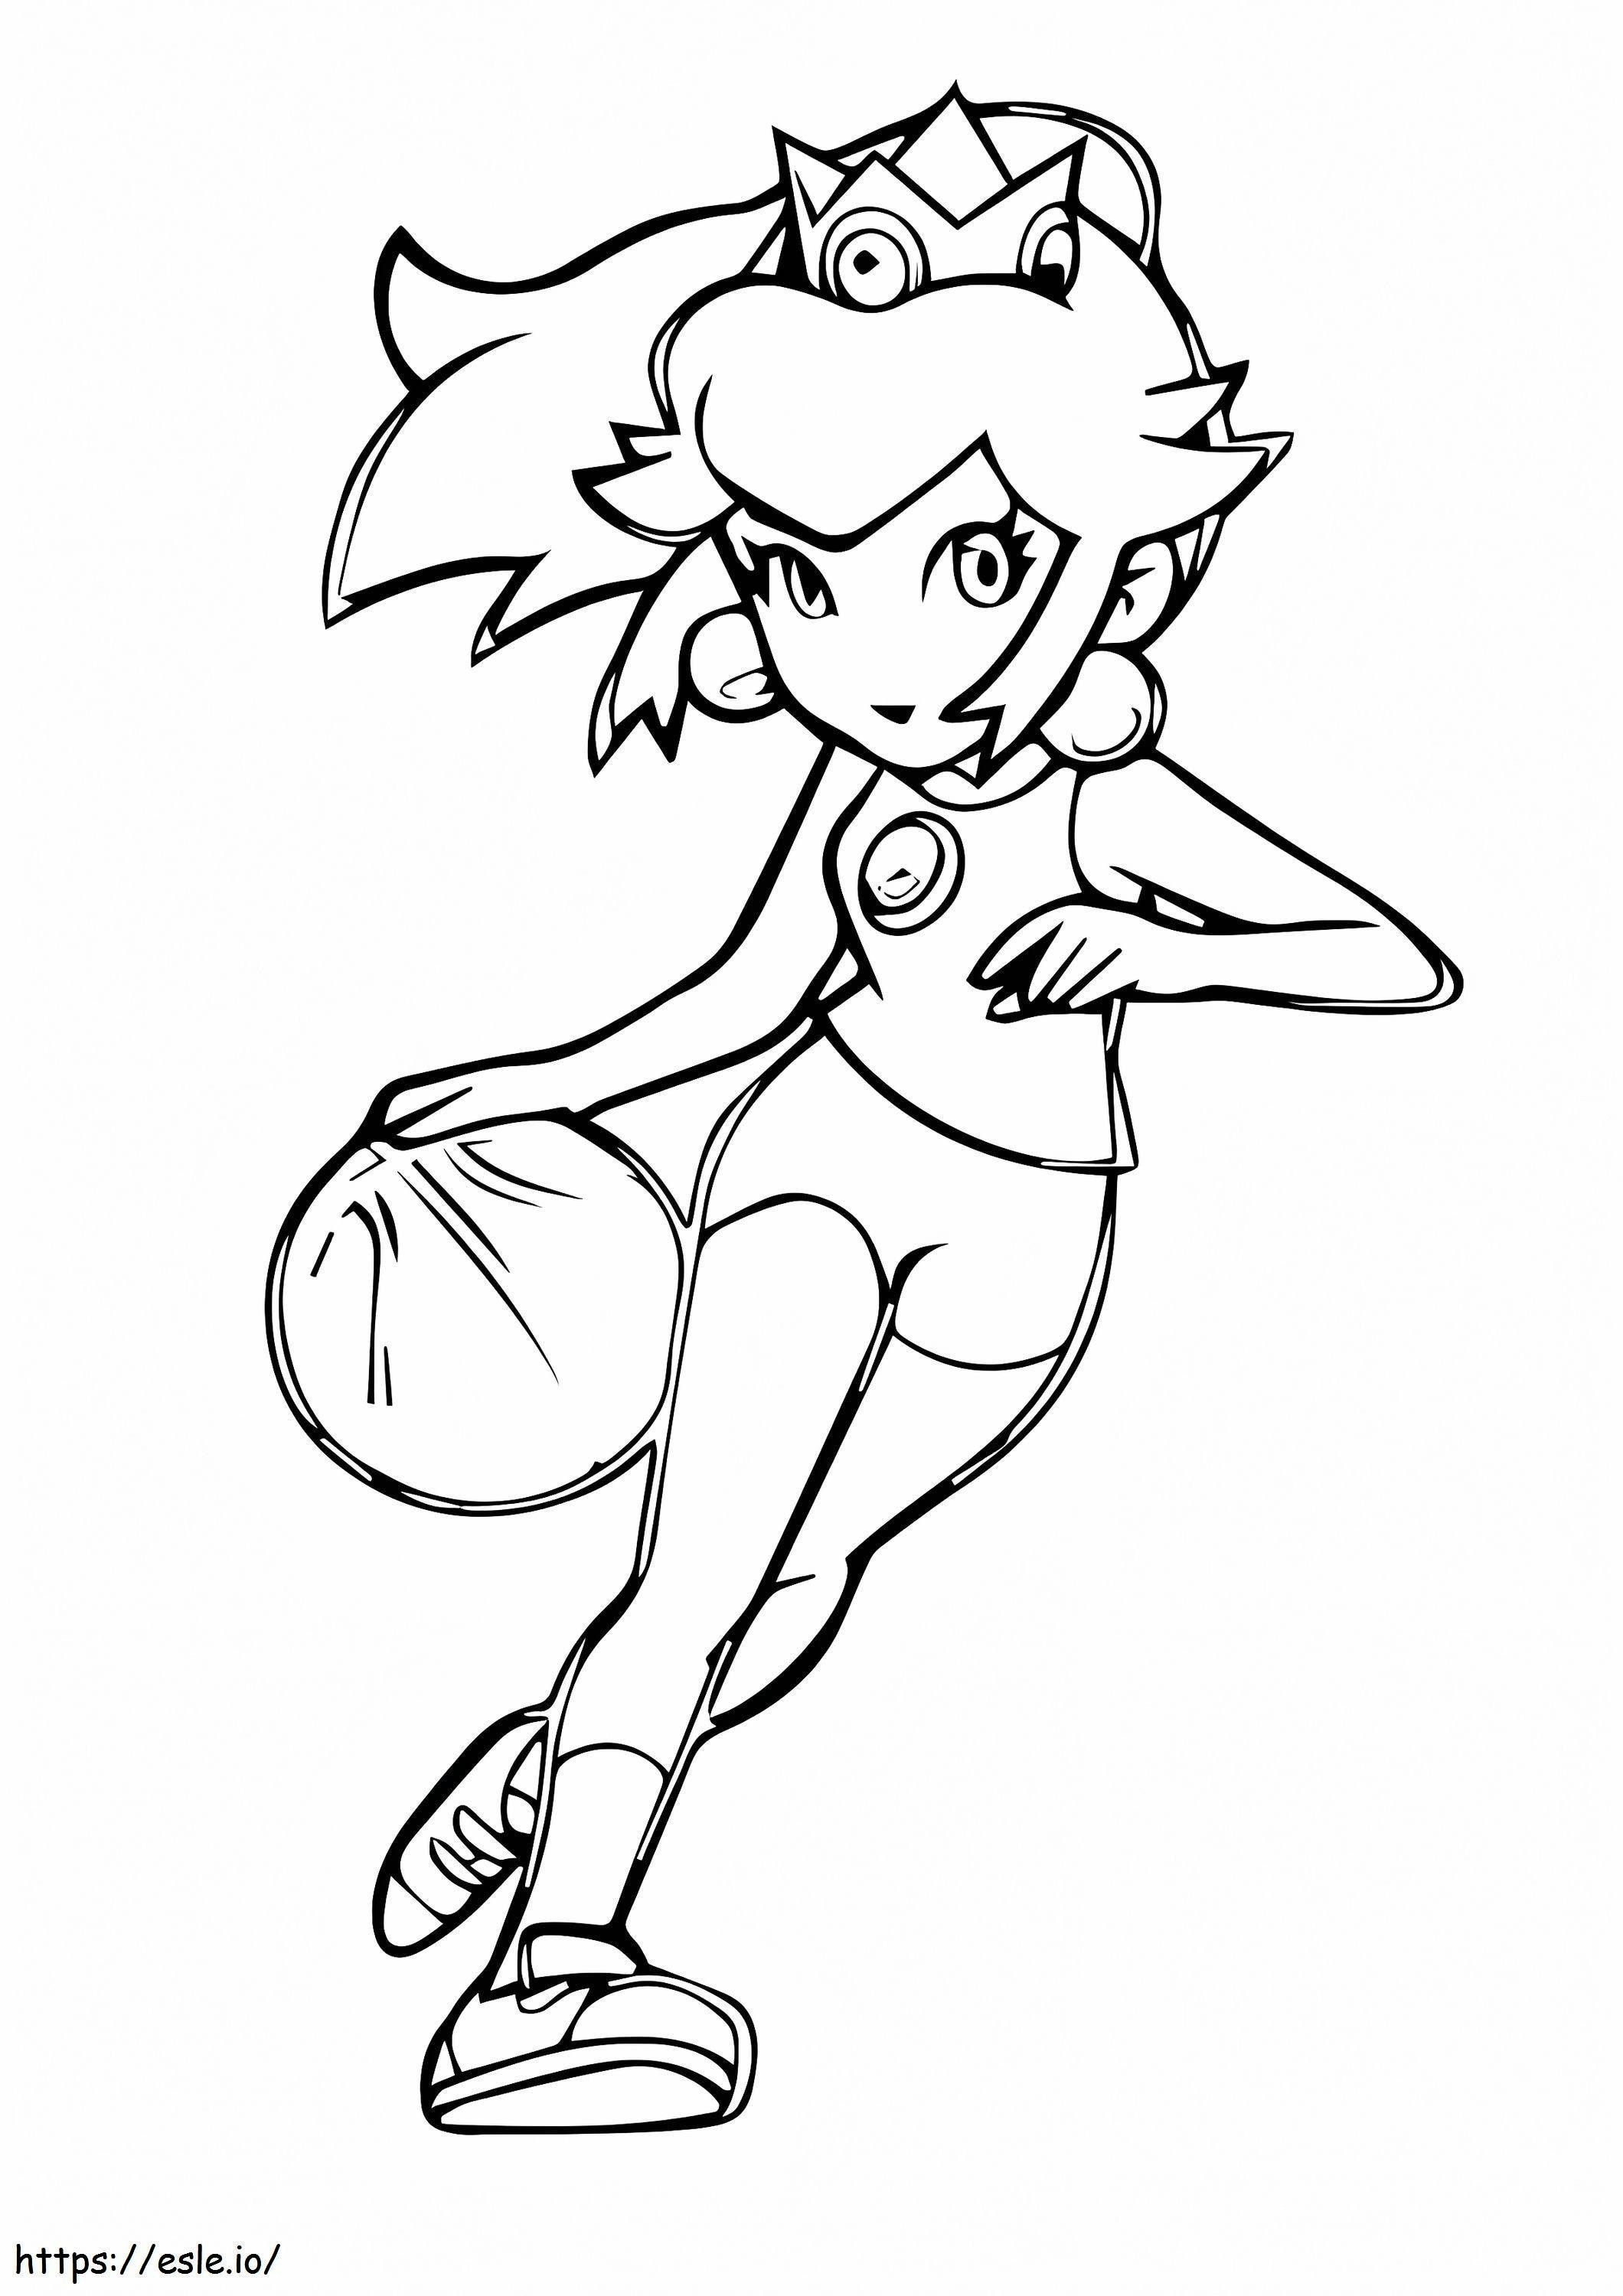 Coloriage Princesse Peach jouant au basket à imprimer dessin